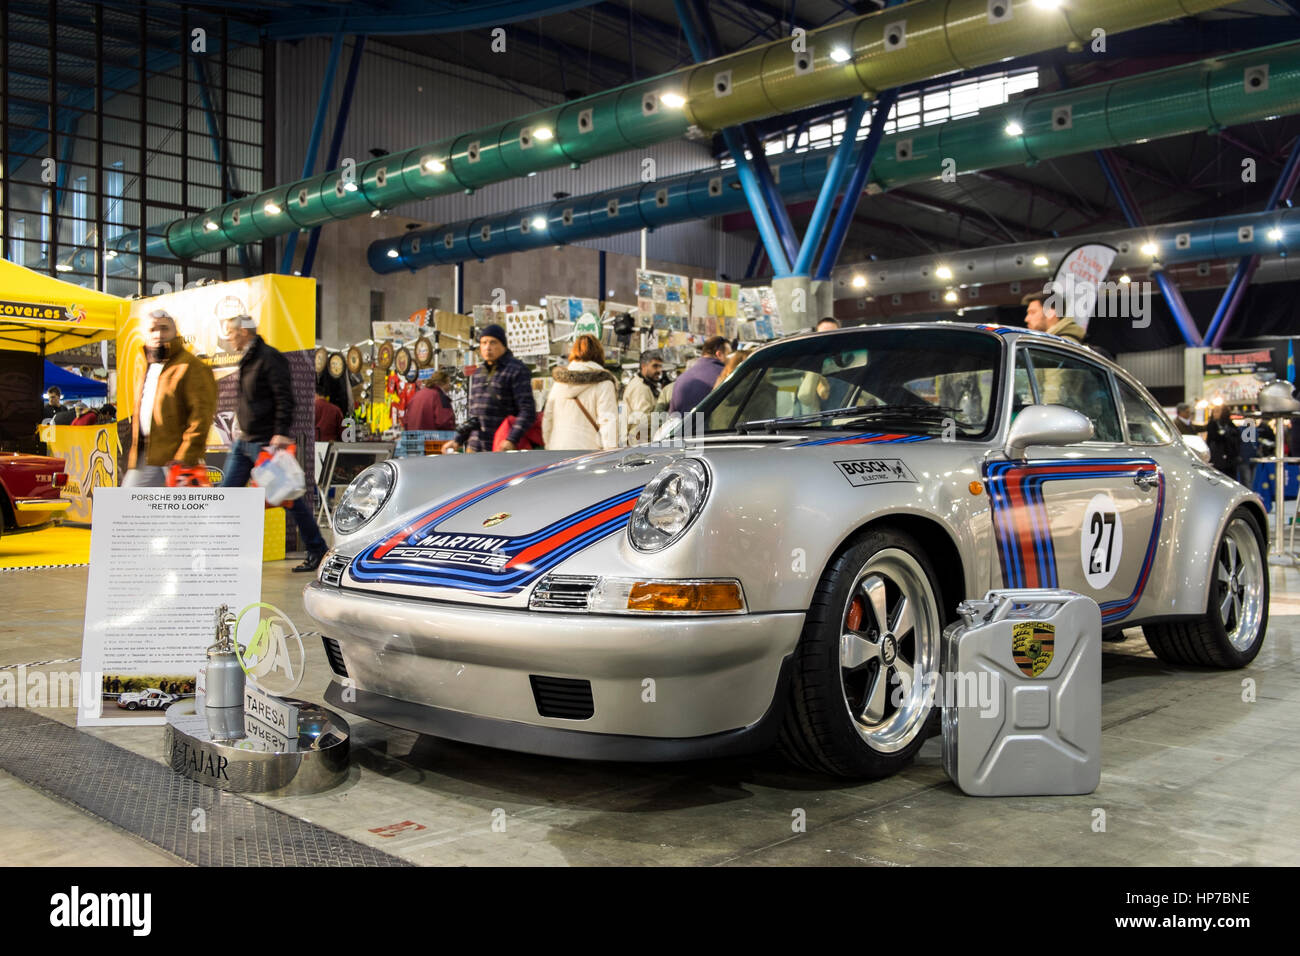 Porsche 911 martini immagini e fotografie stock ad alta risoluzione - Alamy